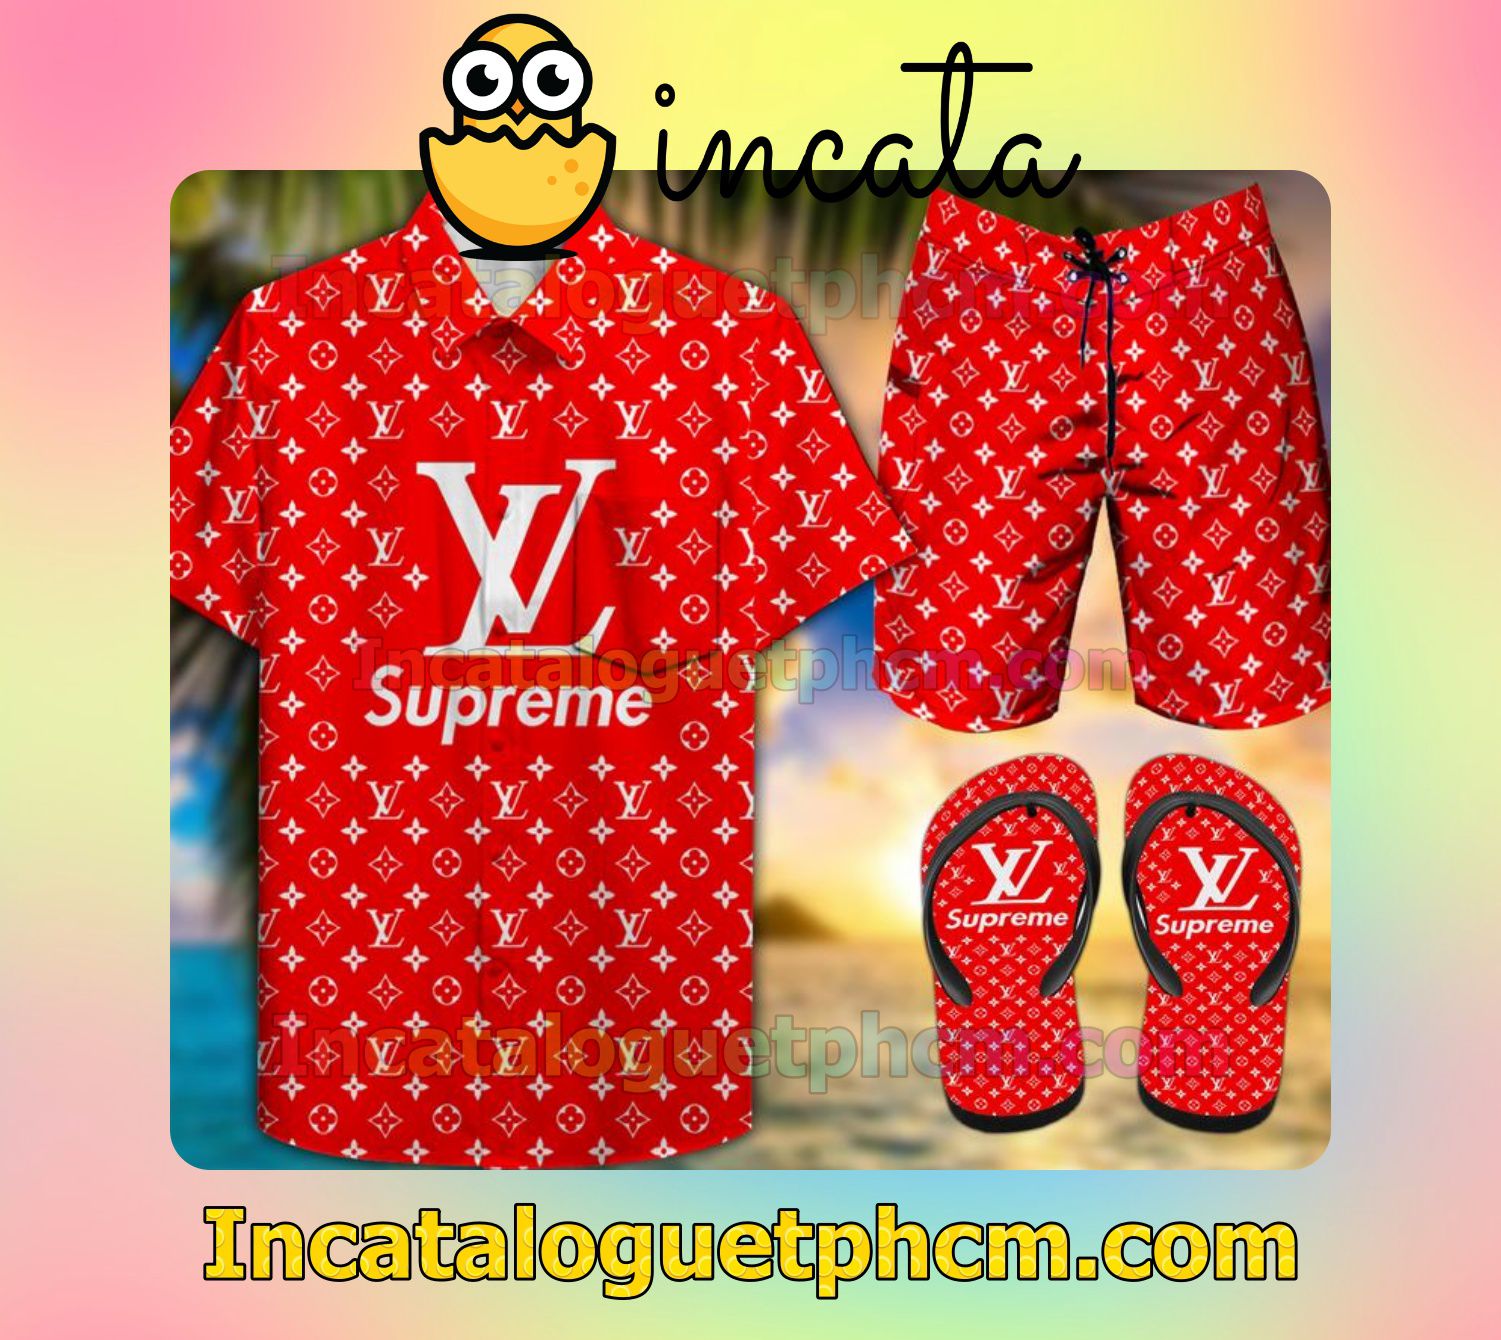 Supreme Red Aloha Shirt And Shorts